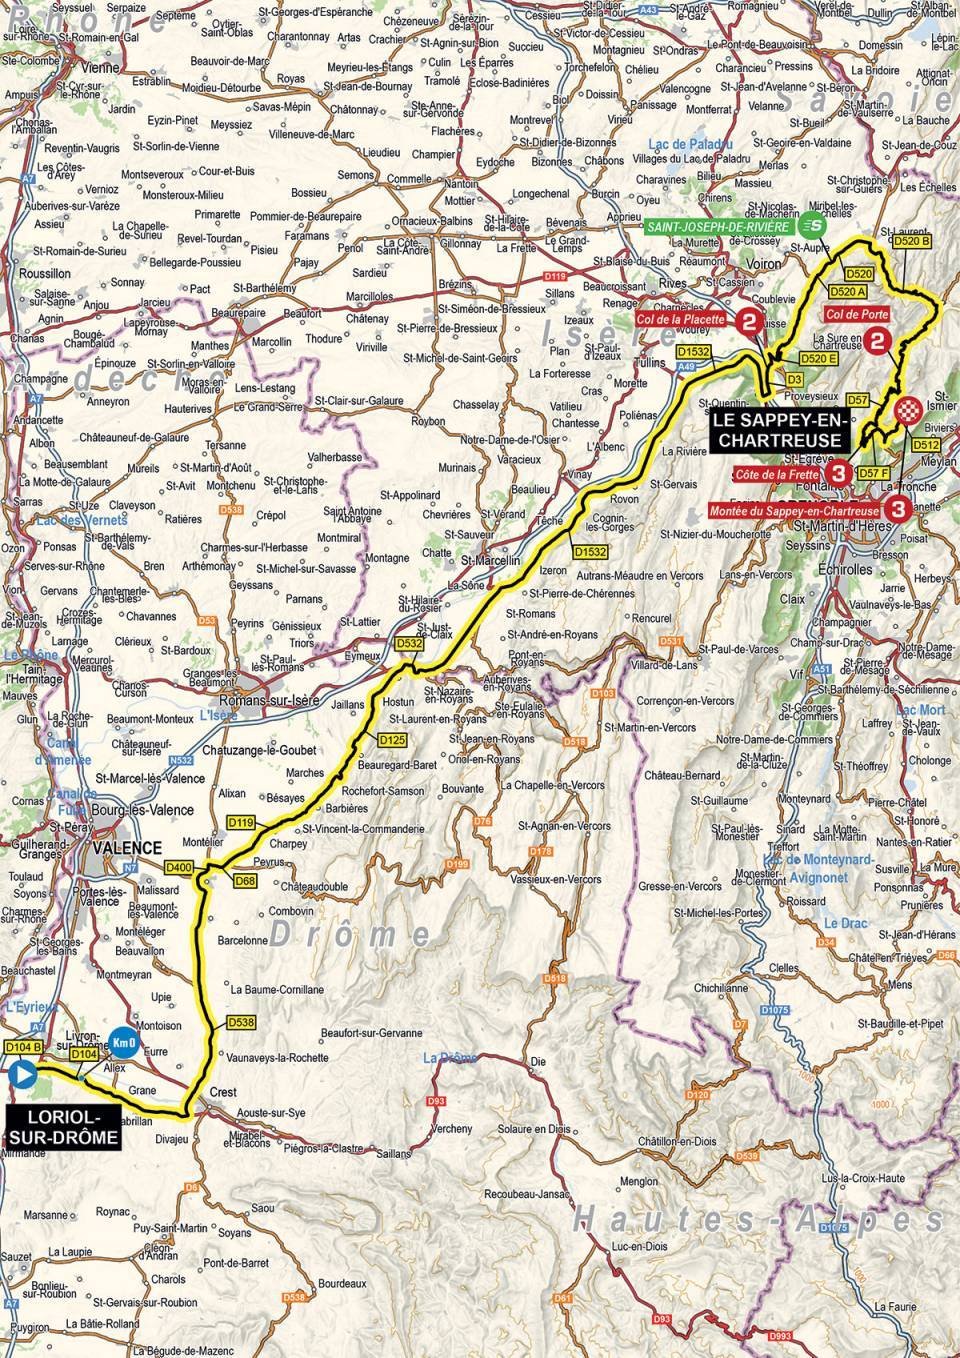 Streckenverlauf Critérium du Dauphiné 2021 - Etappe 6